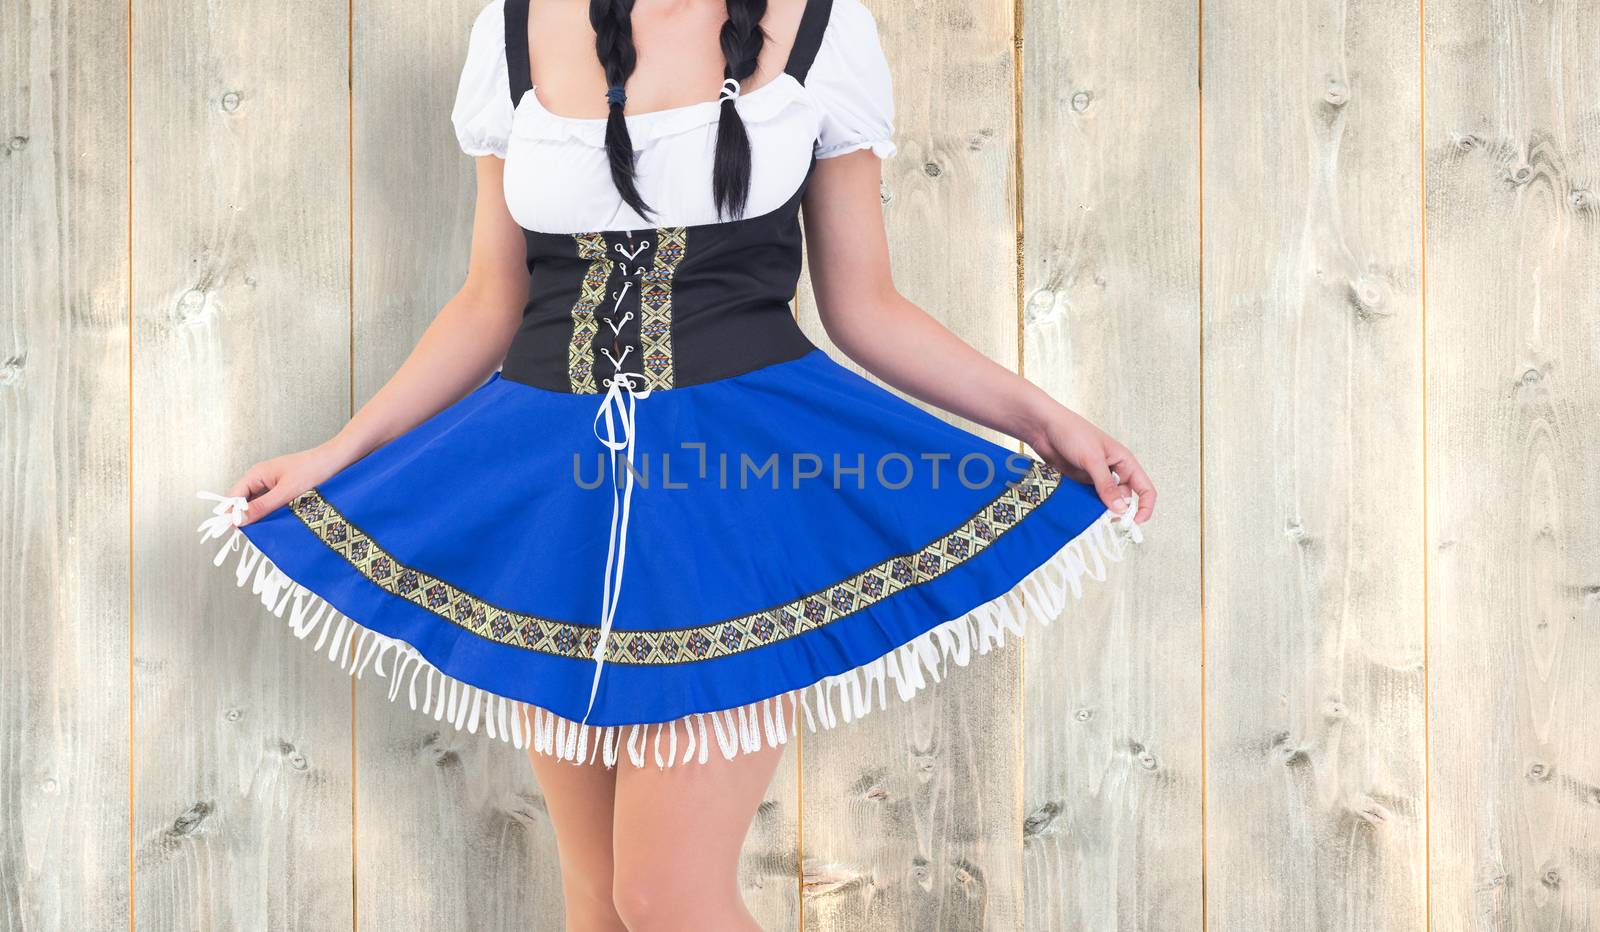 Oktoberfest girl spreading her skirt against pale wooden planks